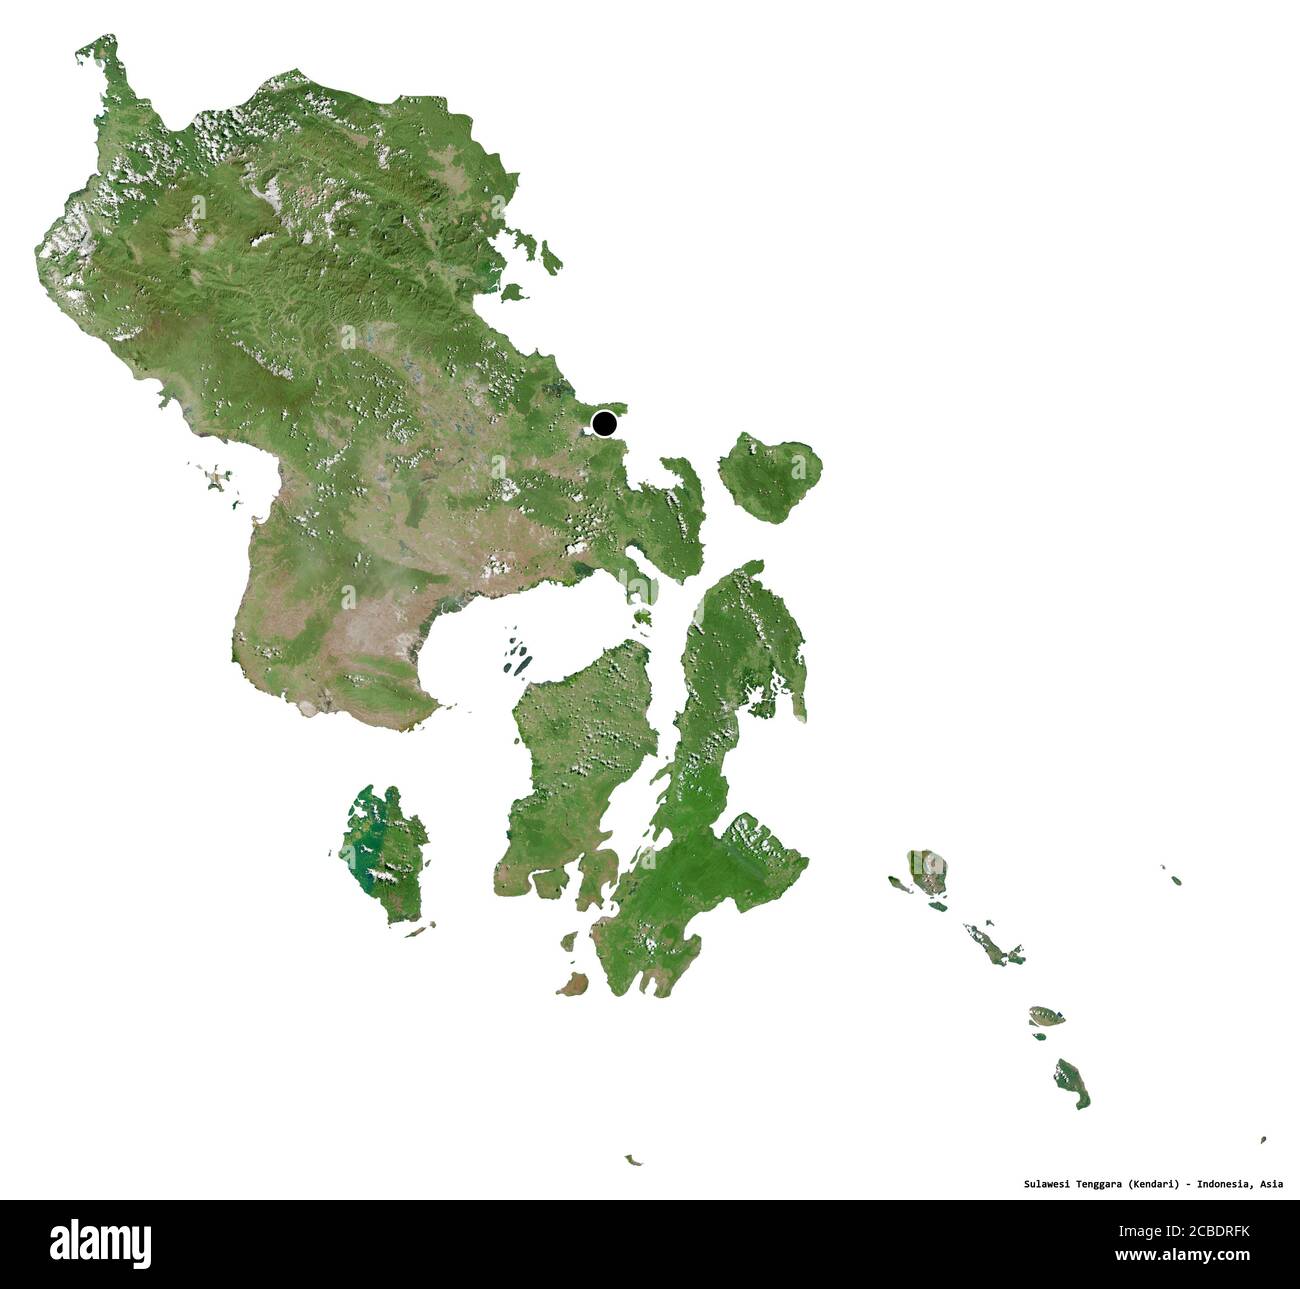 Forma di Sulawesi Tenggara, provincia dell'Indonesia, con la sua capitale isolata su sfondo bianco. Immagini satellitari. Rendering 3D Foto Stock